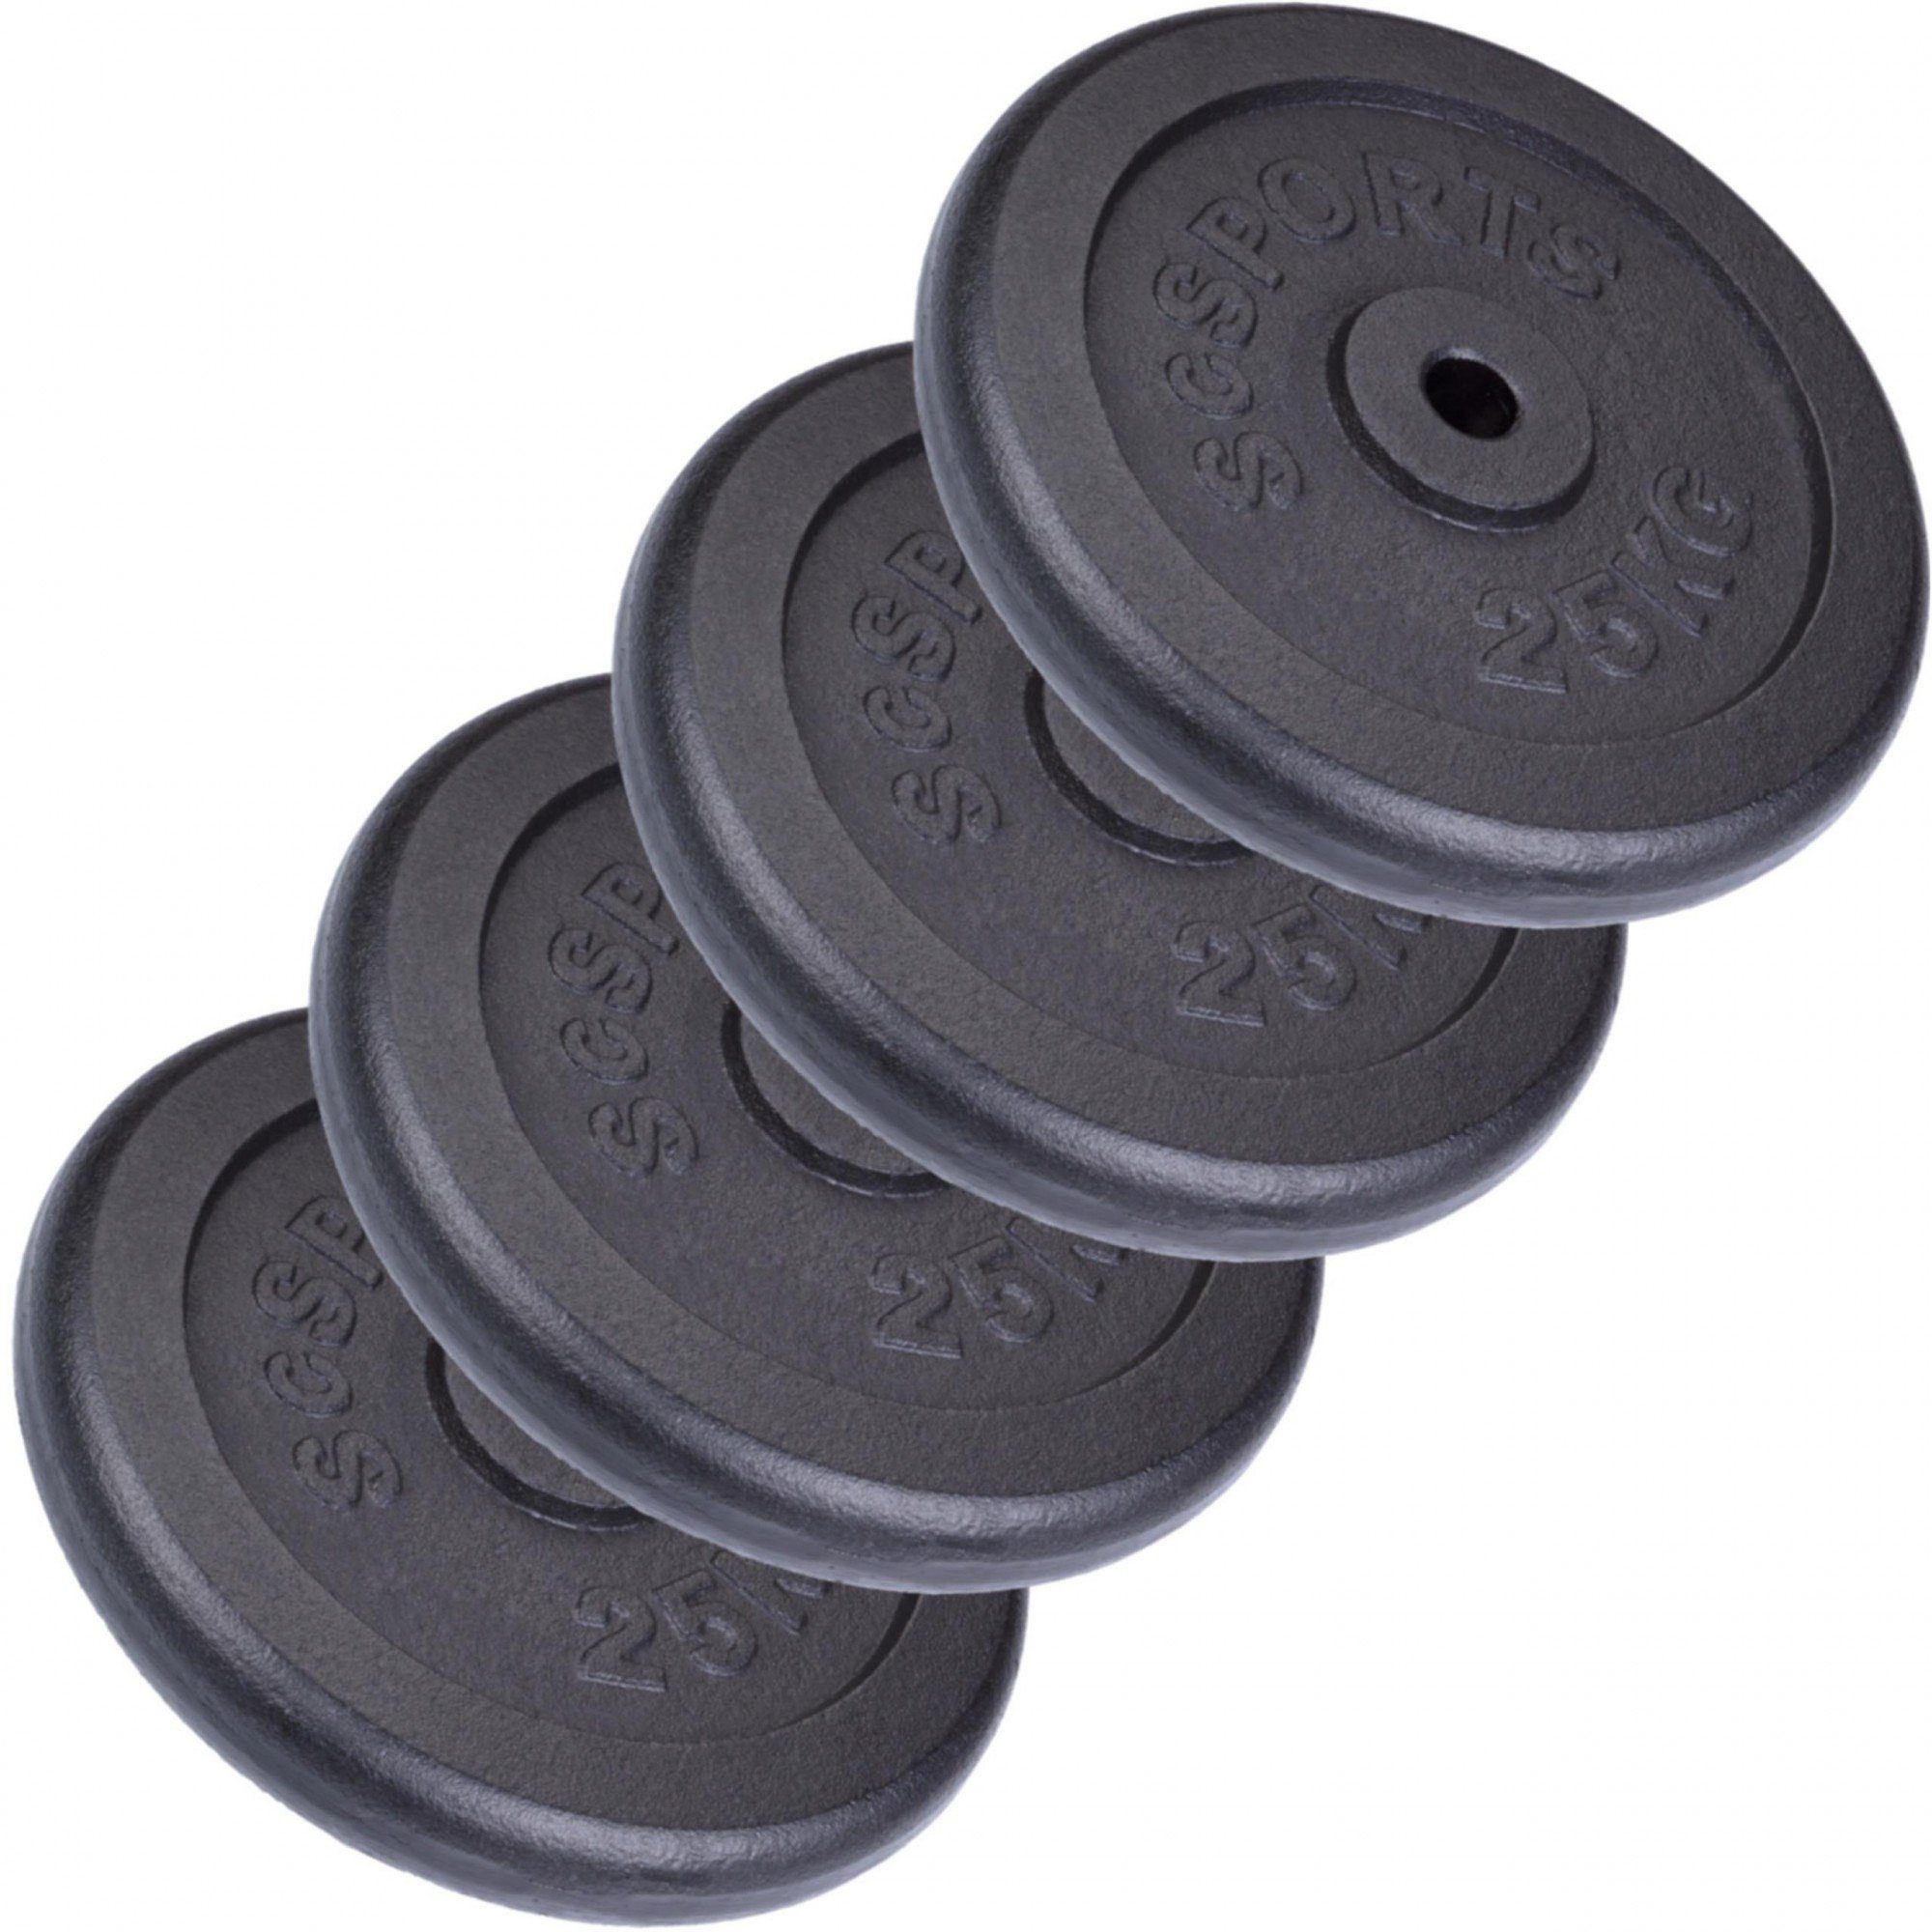 ScSPORTS® 30mm Guss, (10002536-tlg) 100kg Hantelscheiben Gewichte Set Gewichtsscheiben Gusseisen